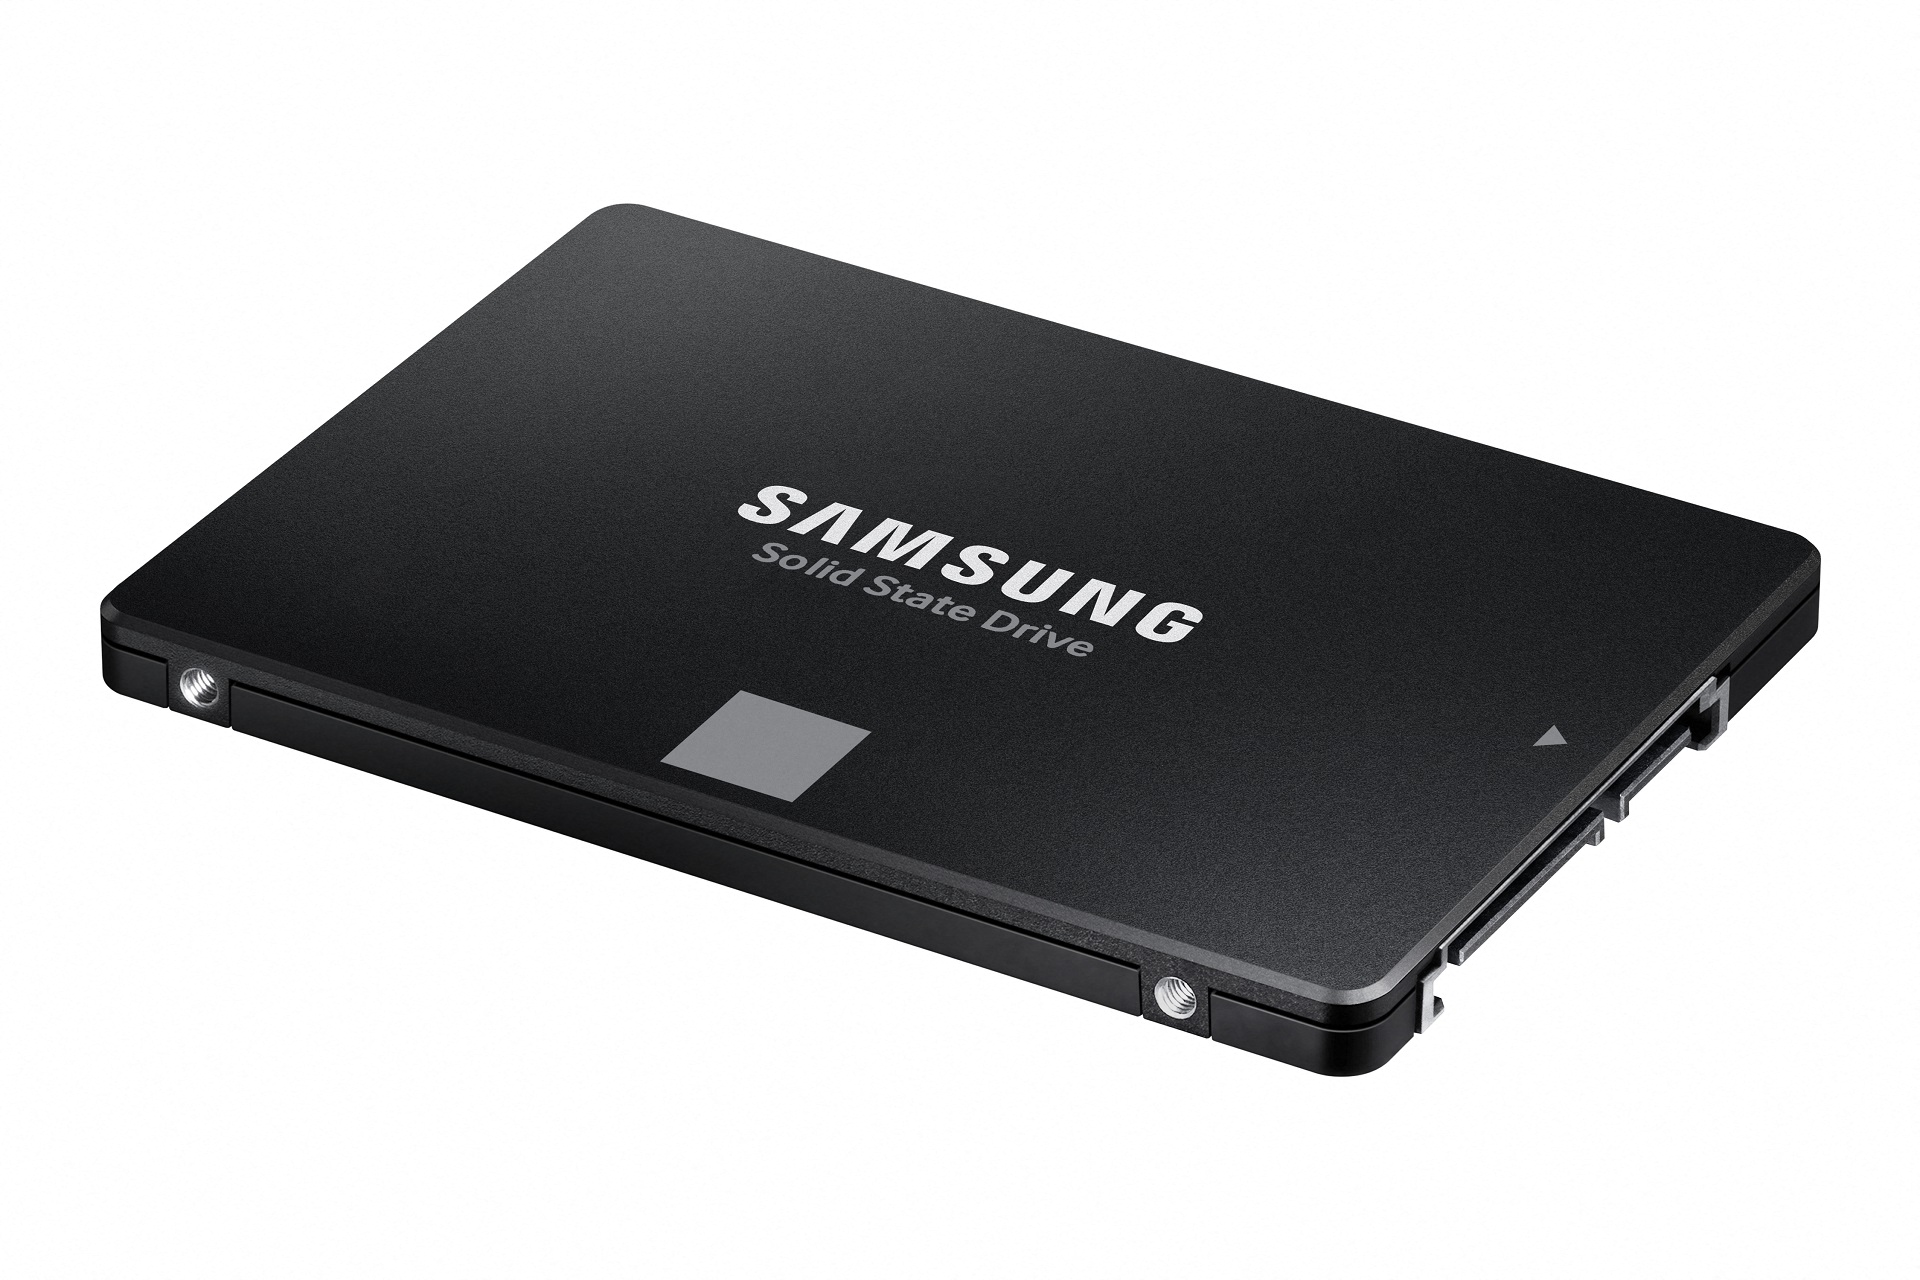 Immagine pubblicata in relazione al seguente contenuto: Samsung annuncia i drive SSD da 2.5-inch 870 EVO con interfaccia SATA 6Gbps | Nome immagine: news31573_Samsung-SSD-870-EVO_1.jpg